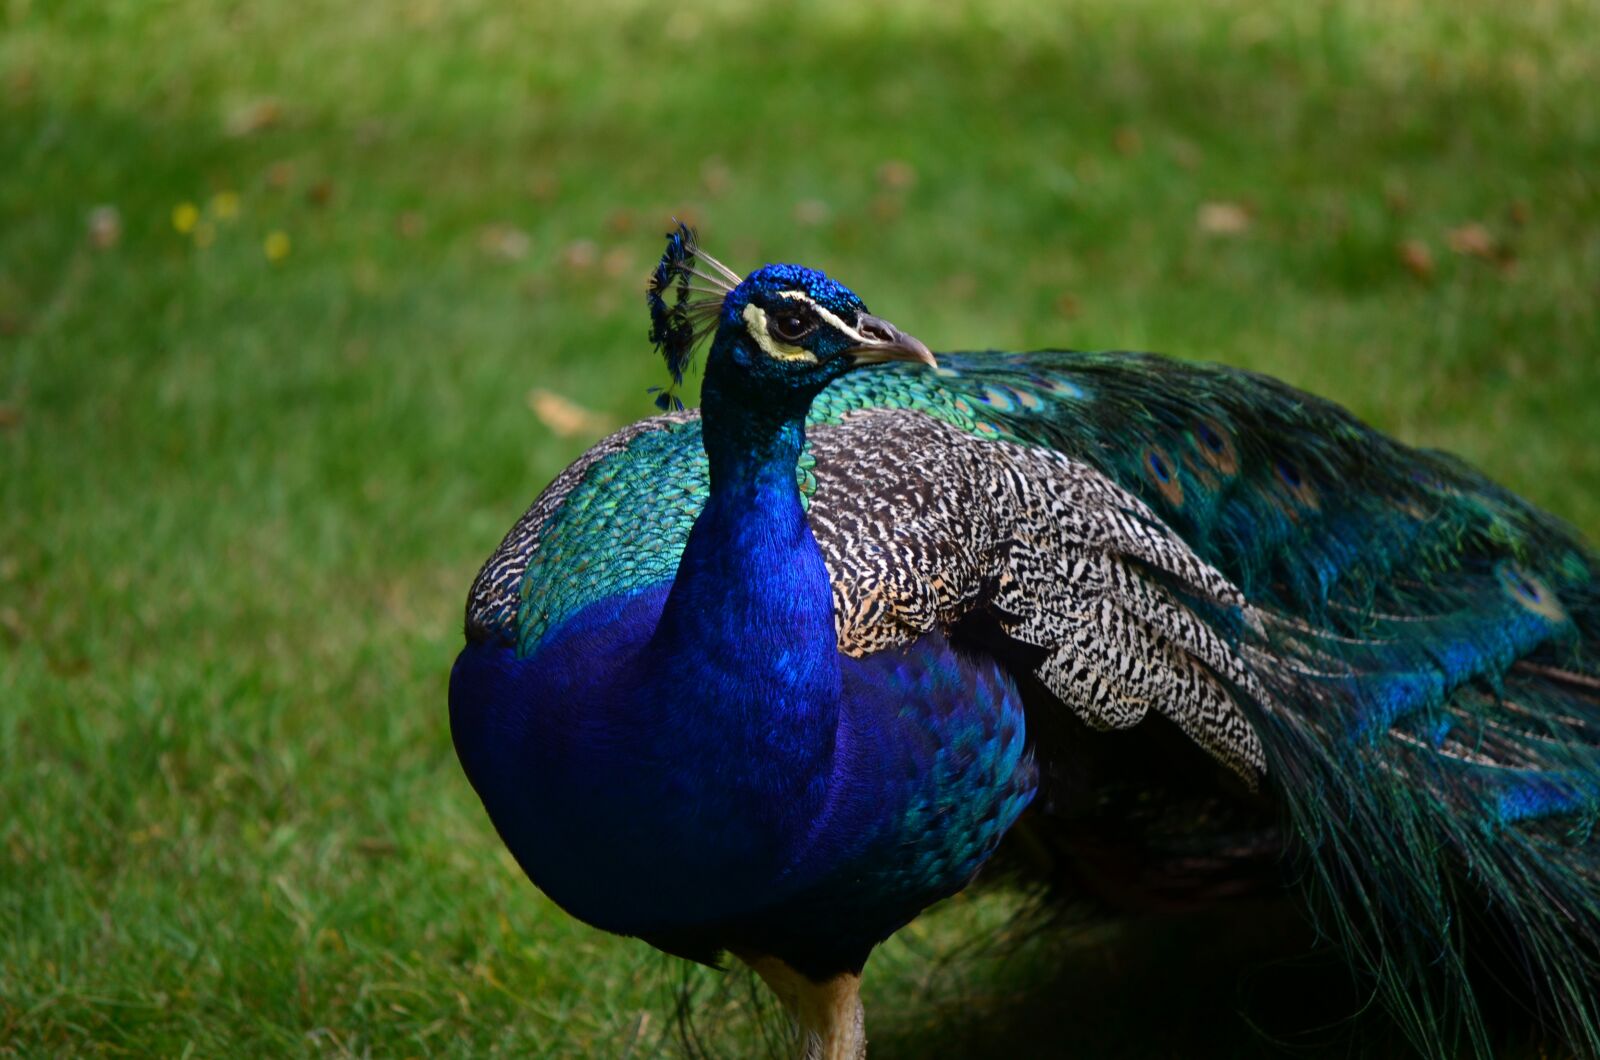 Nikon D7000 sample photo. Bird, feather, peacock photography